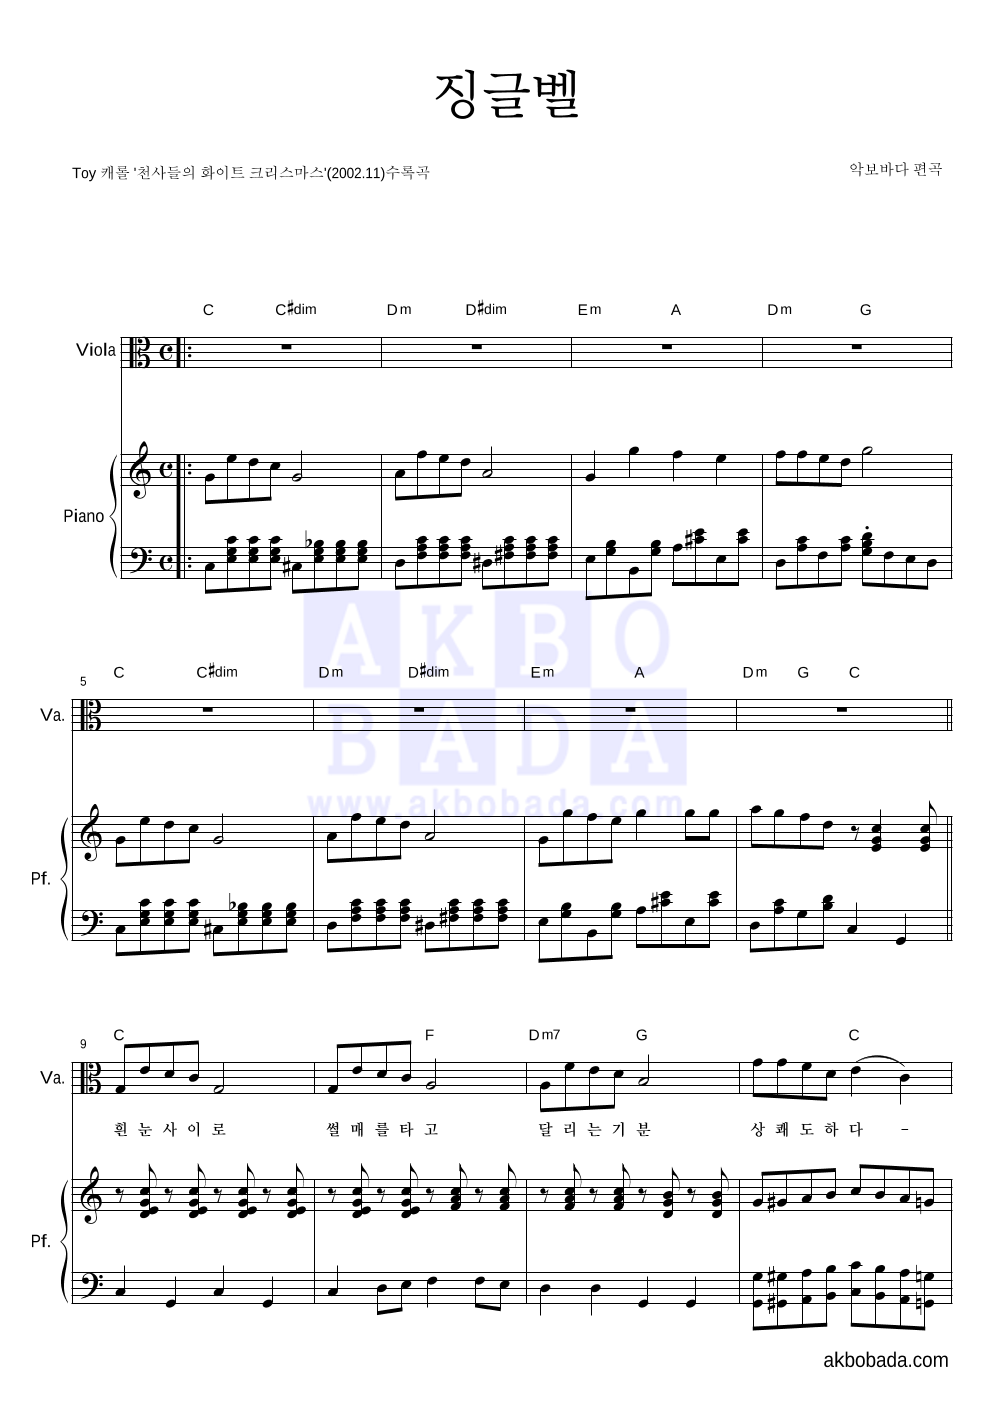 크리스마스 캐롤 - 징글벨 (흰눈사이로) 비올라&피아노 악보 